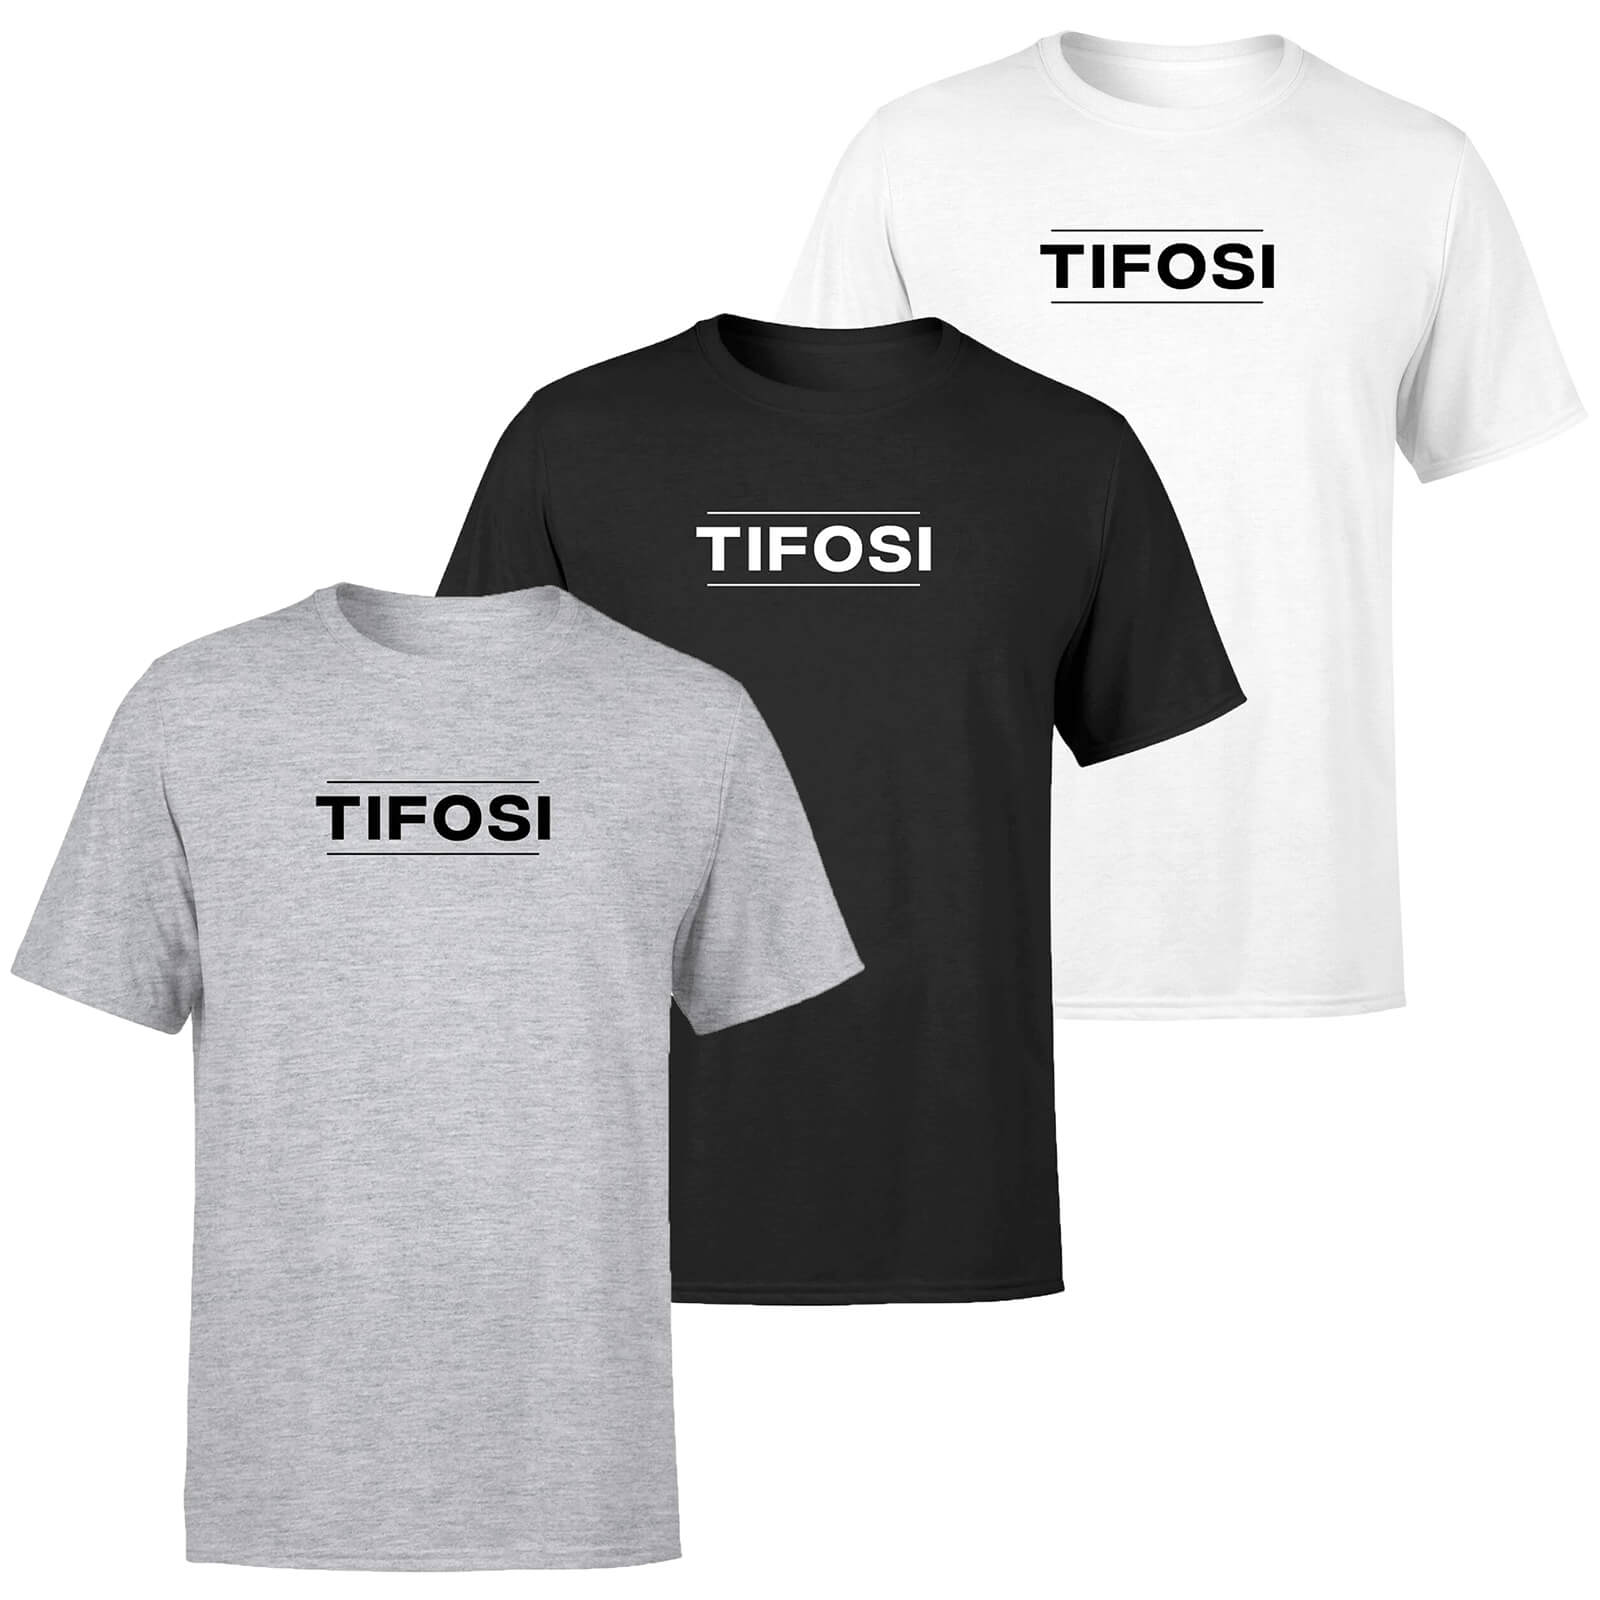 Tifosi Men's T-Shirt - L - Grau